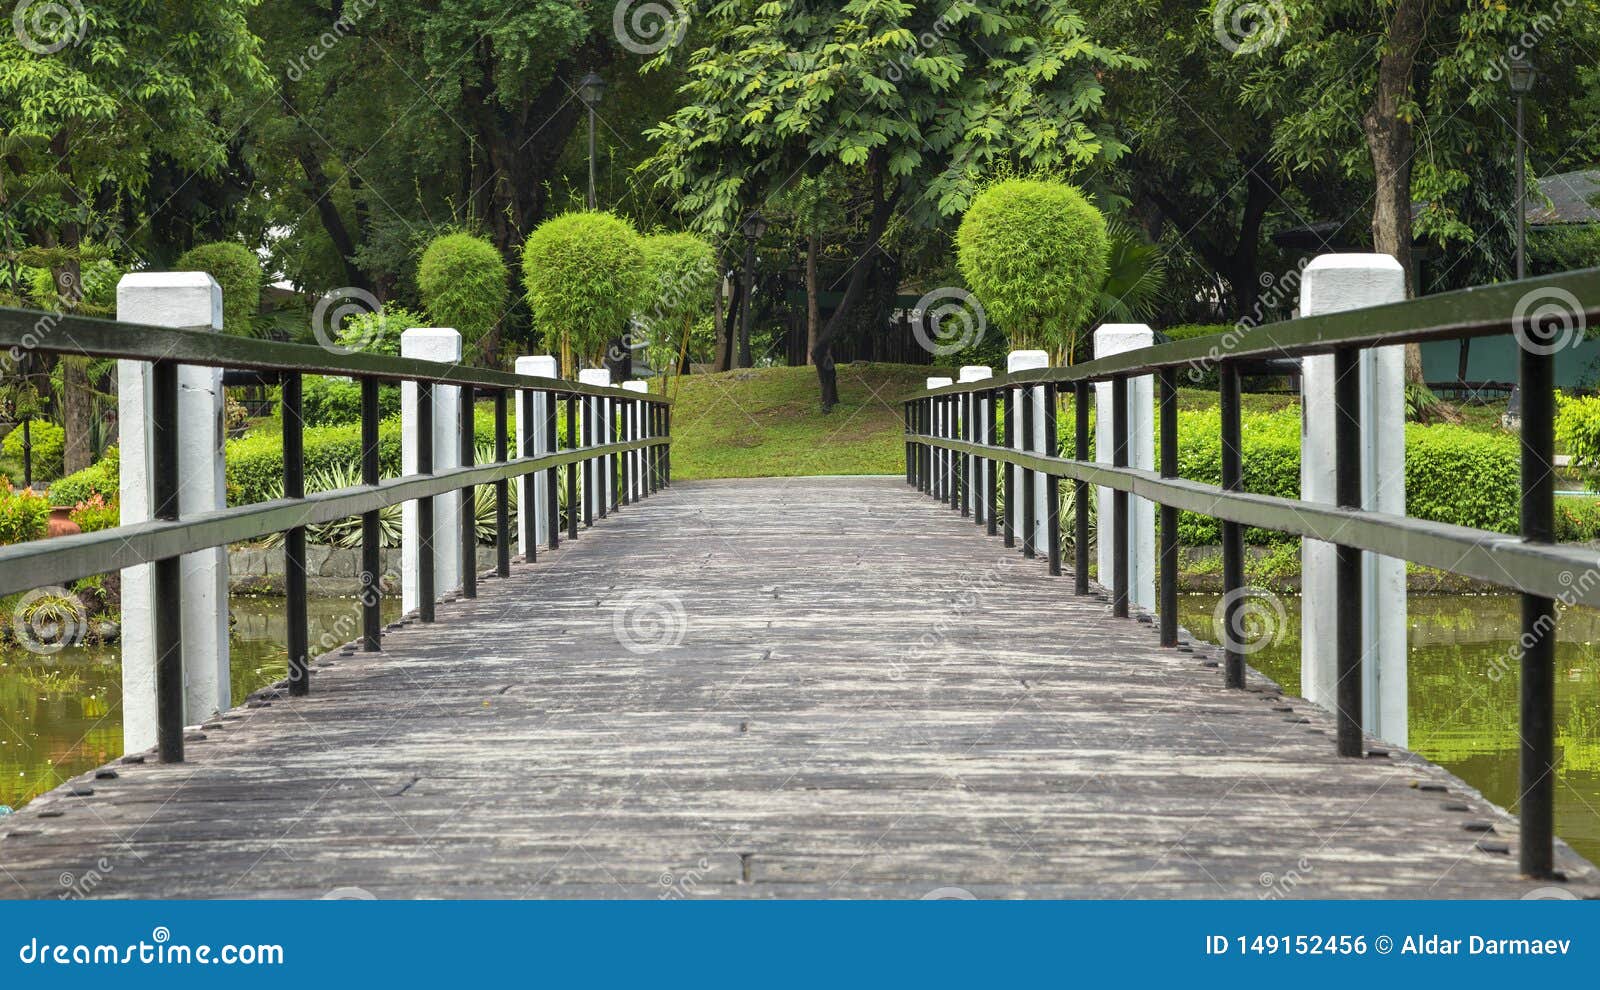 bridge in japanese garden in rizal luneta park, manila, philippines